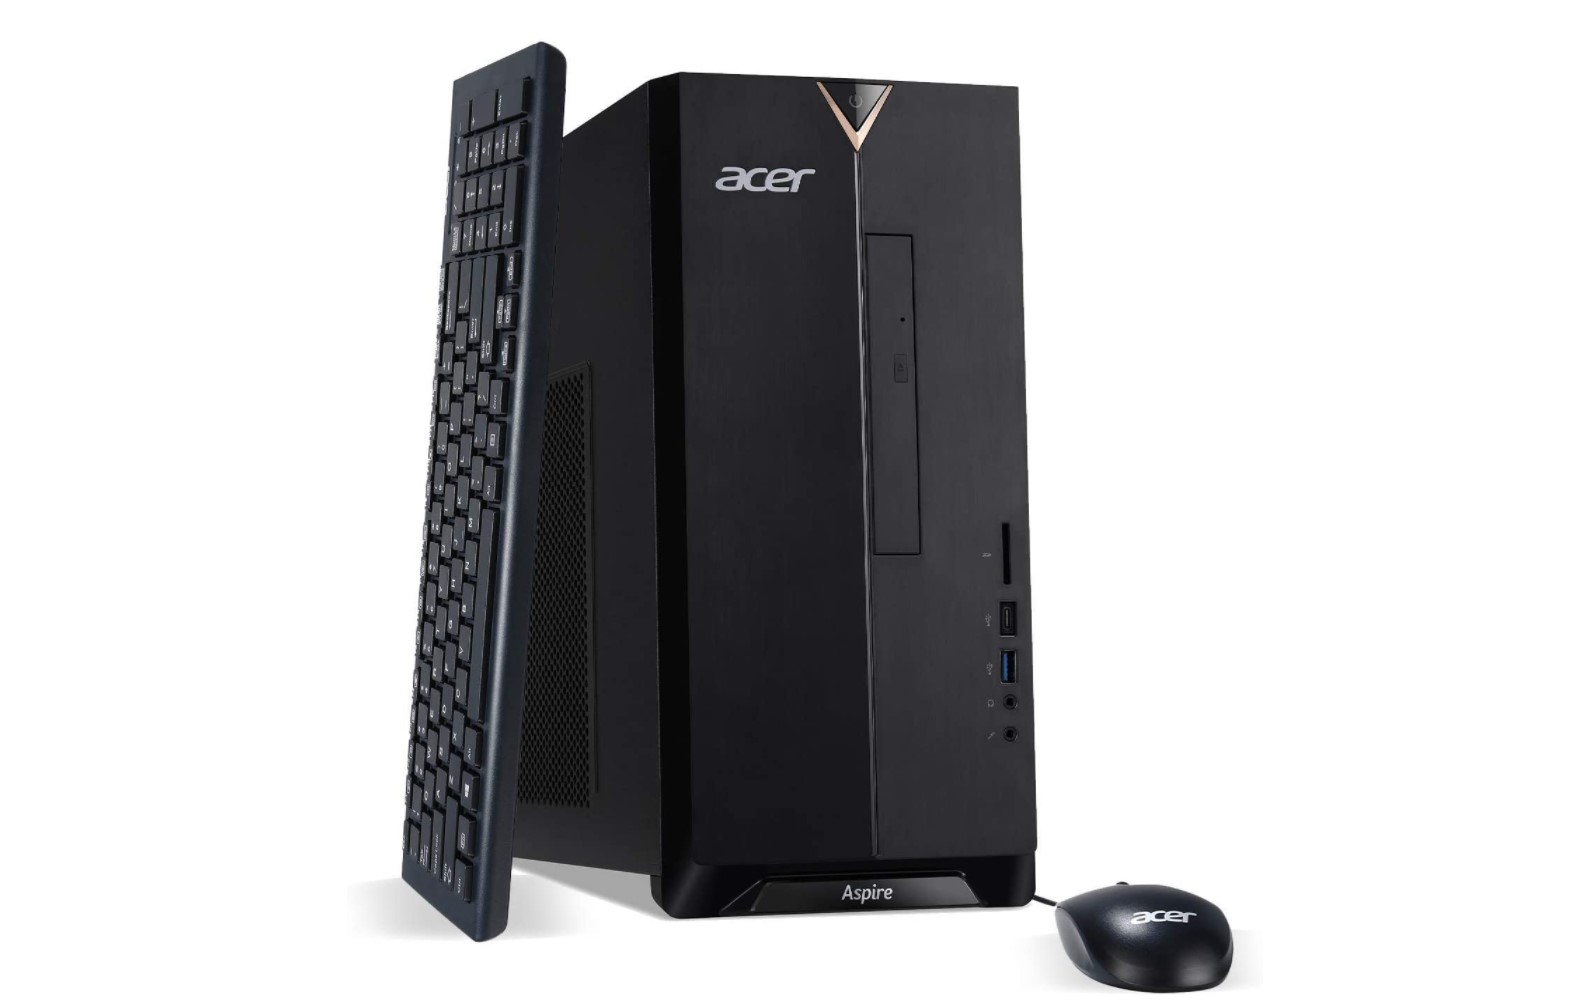 desktop computers under $500 acer aspire 895